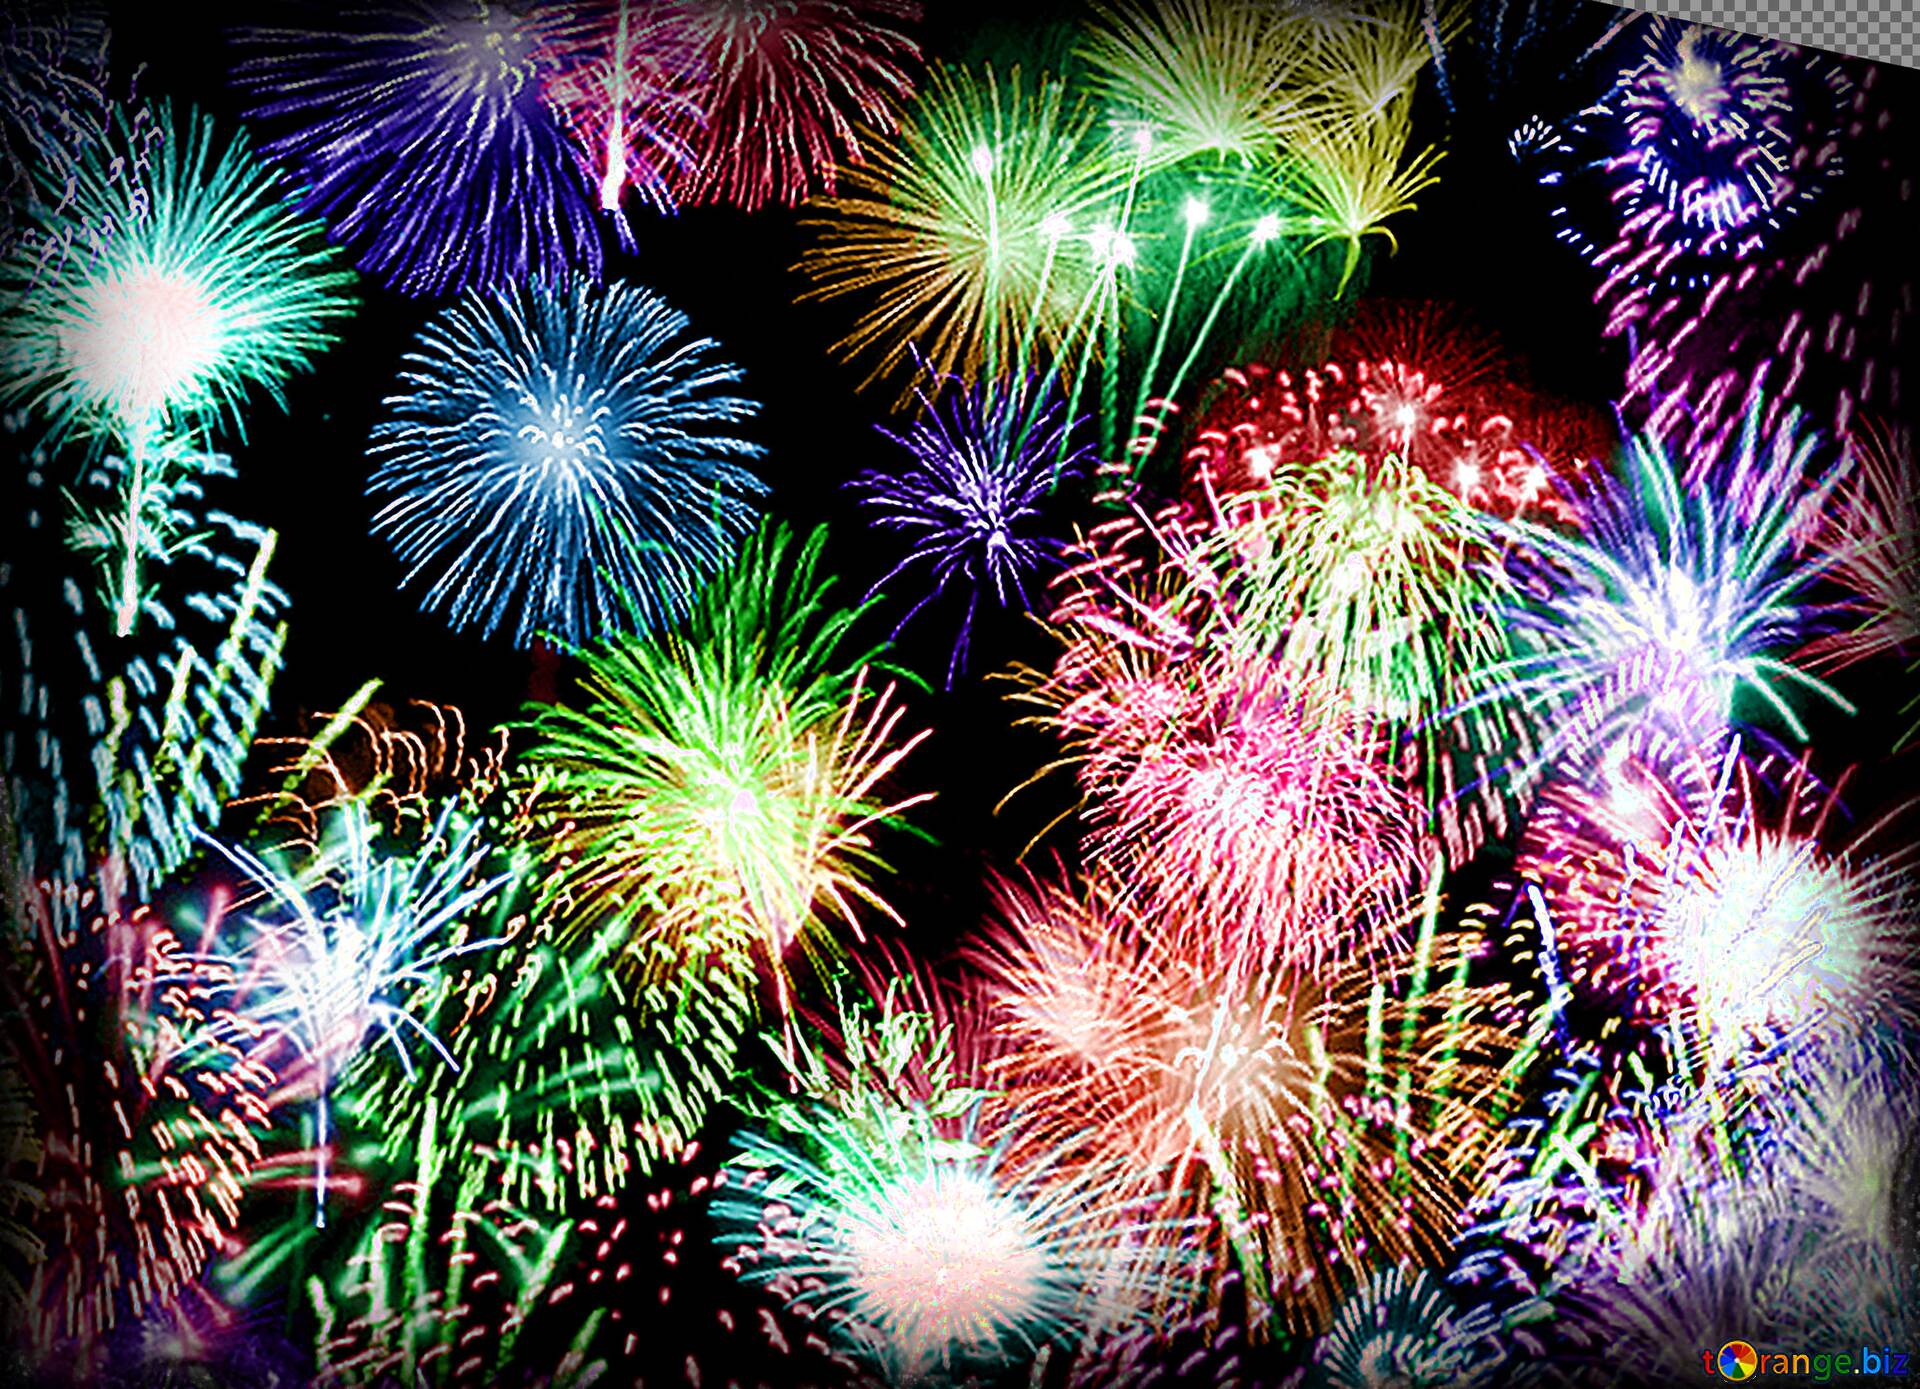 フリー画像をダウンロード Fireworks Colors Background 帰属とライセンス 無料フォトバンクtorange Biz 効果